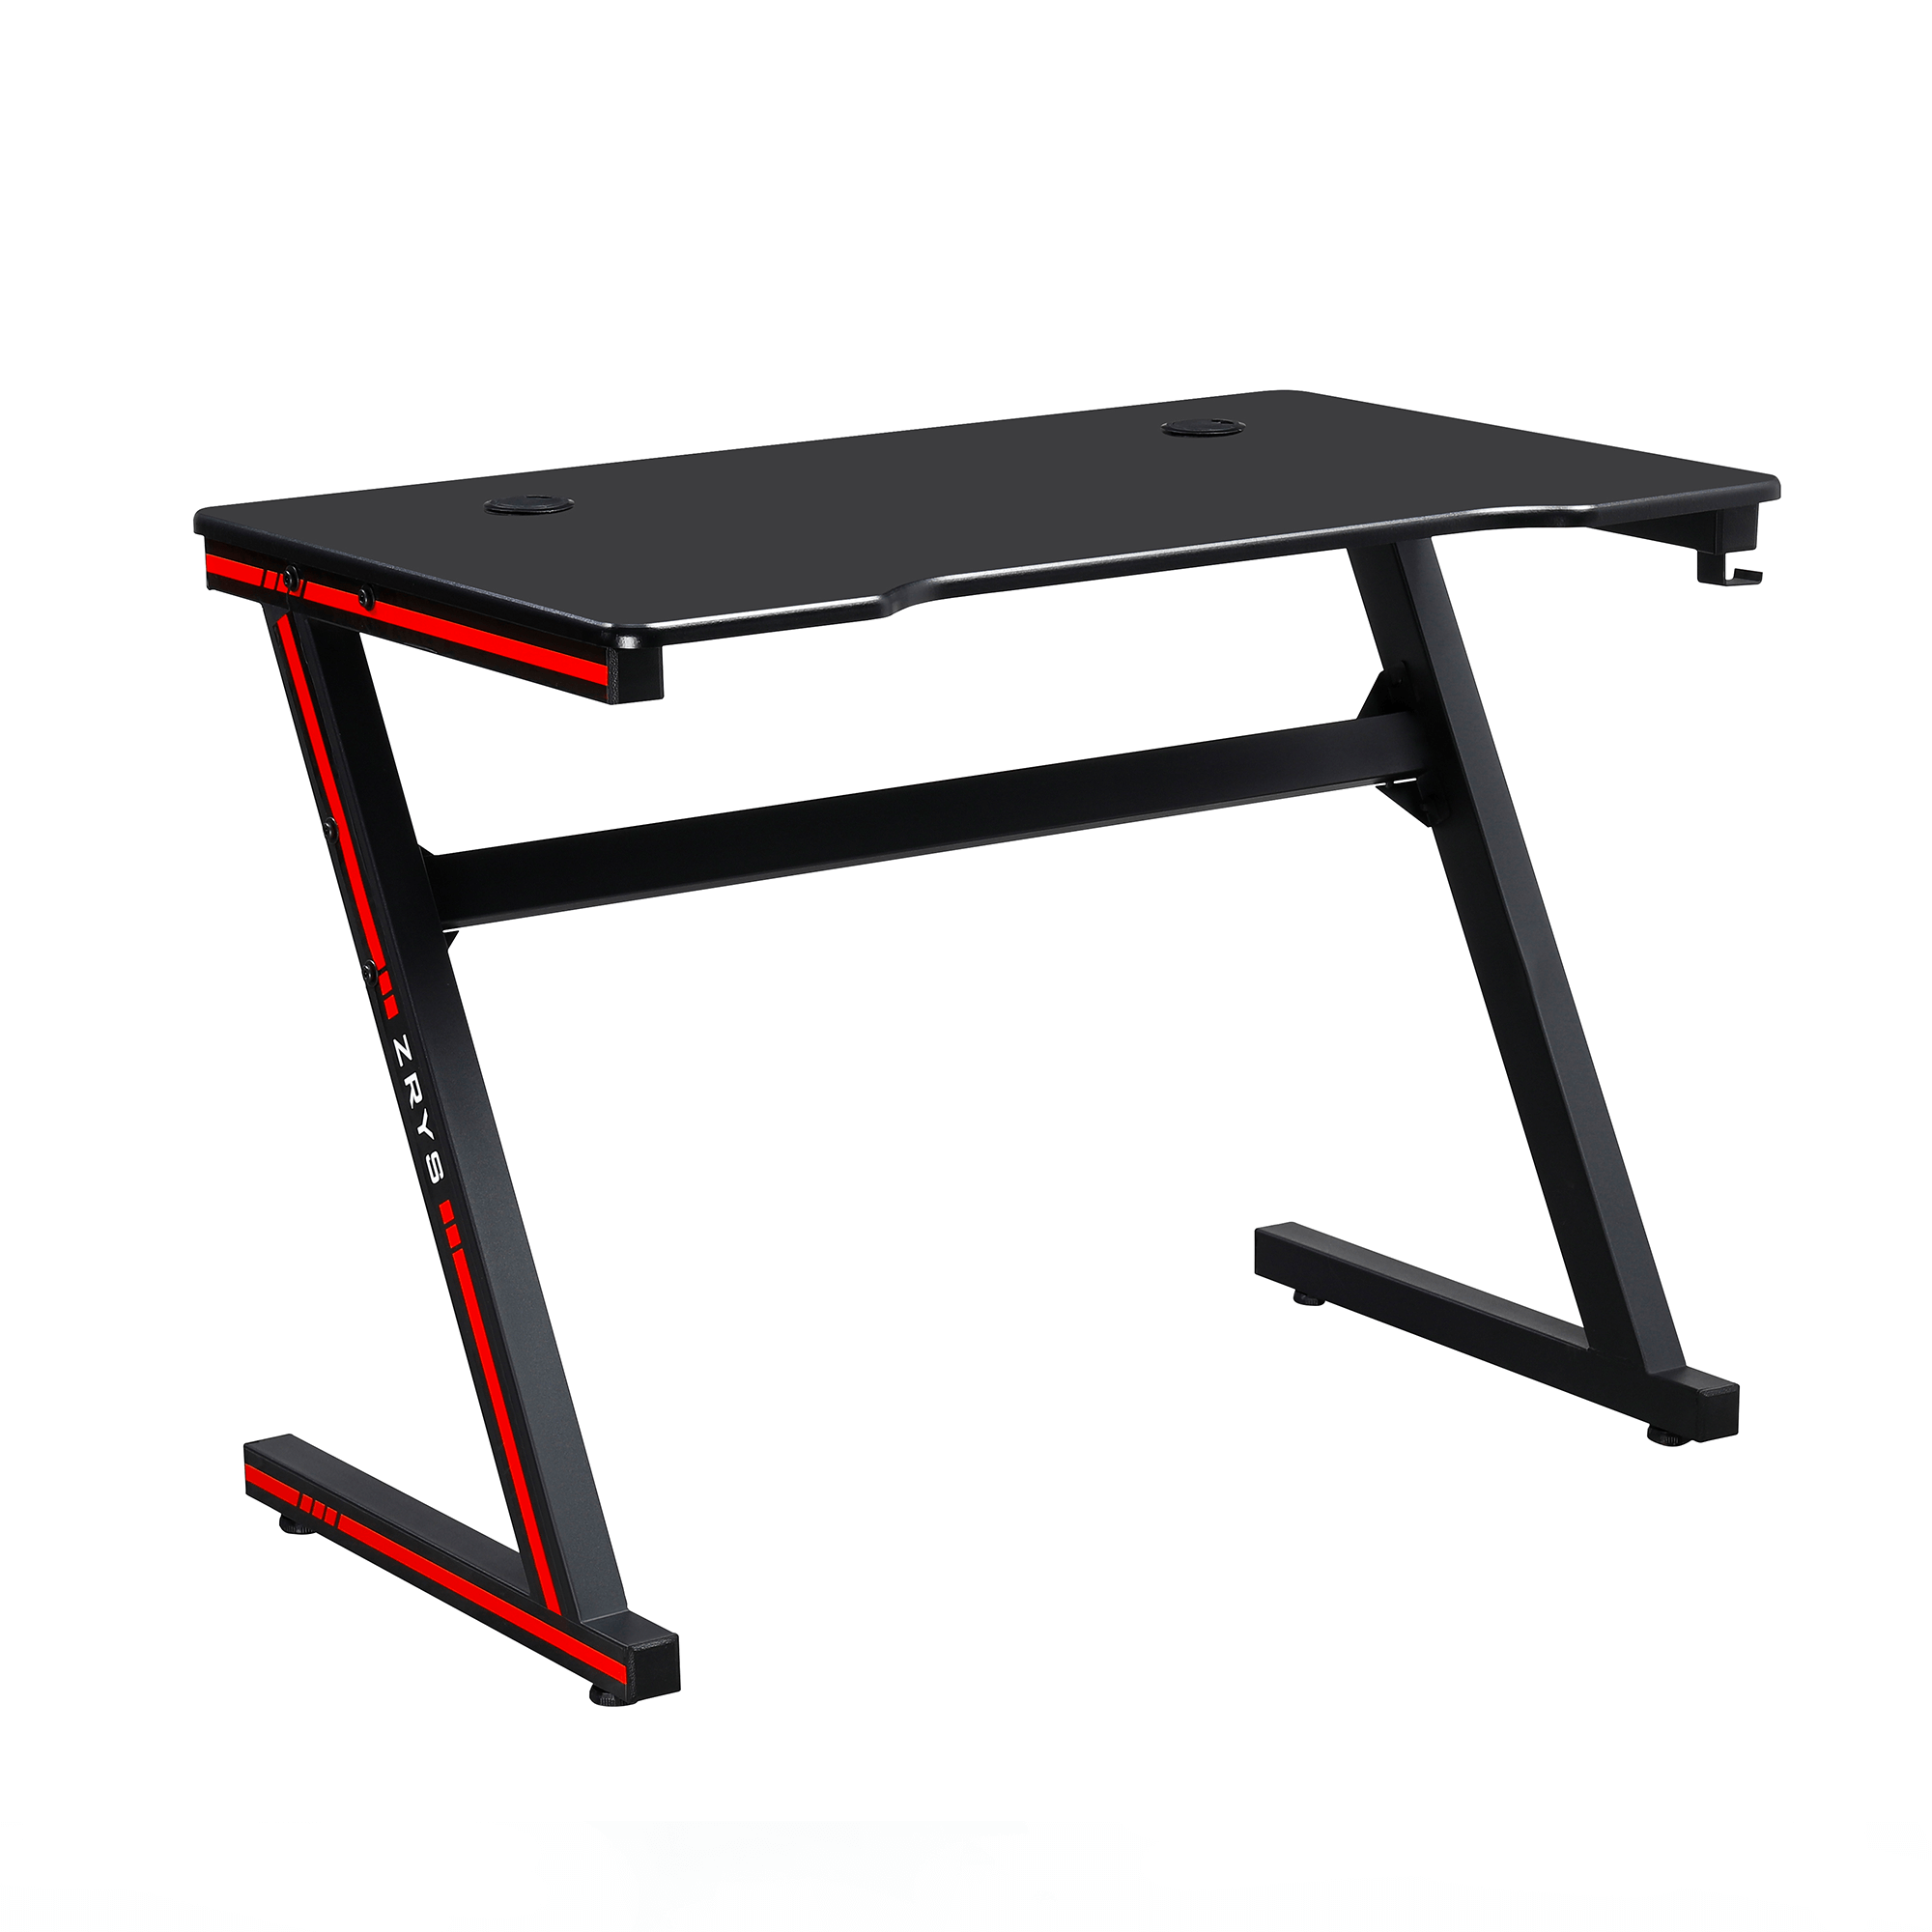 Herní počítačový stůl MACKENZIE 100 cm, MDF PVC fólie a kov černý, červené nálepky